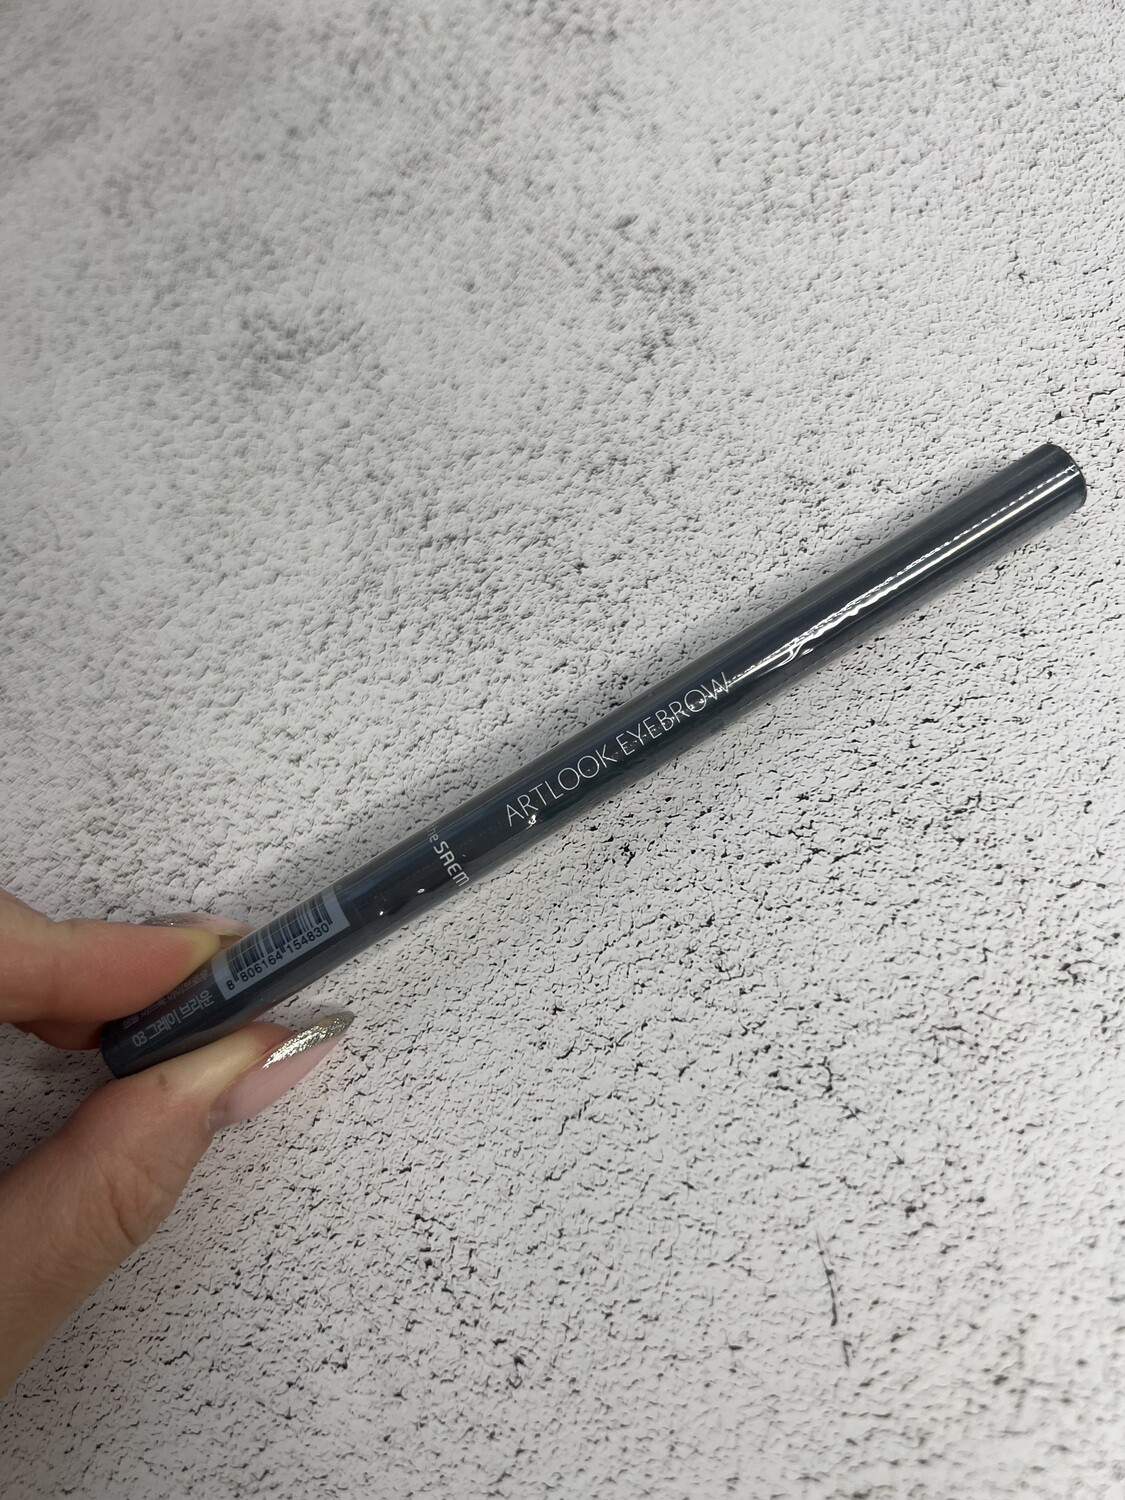 THE SAEM Saemmul Artlook Eyebrow тон03 Устойчивый карандаш для бровей с щеточкой